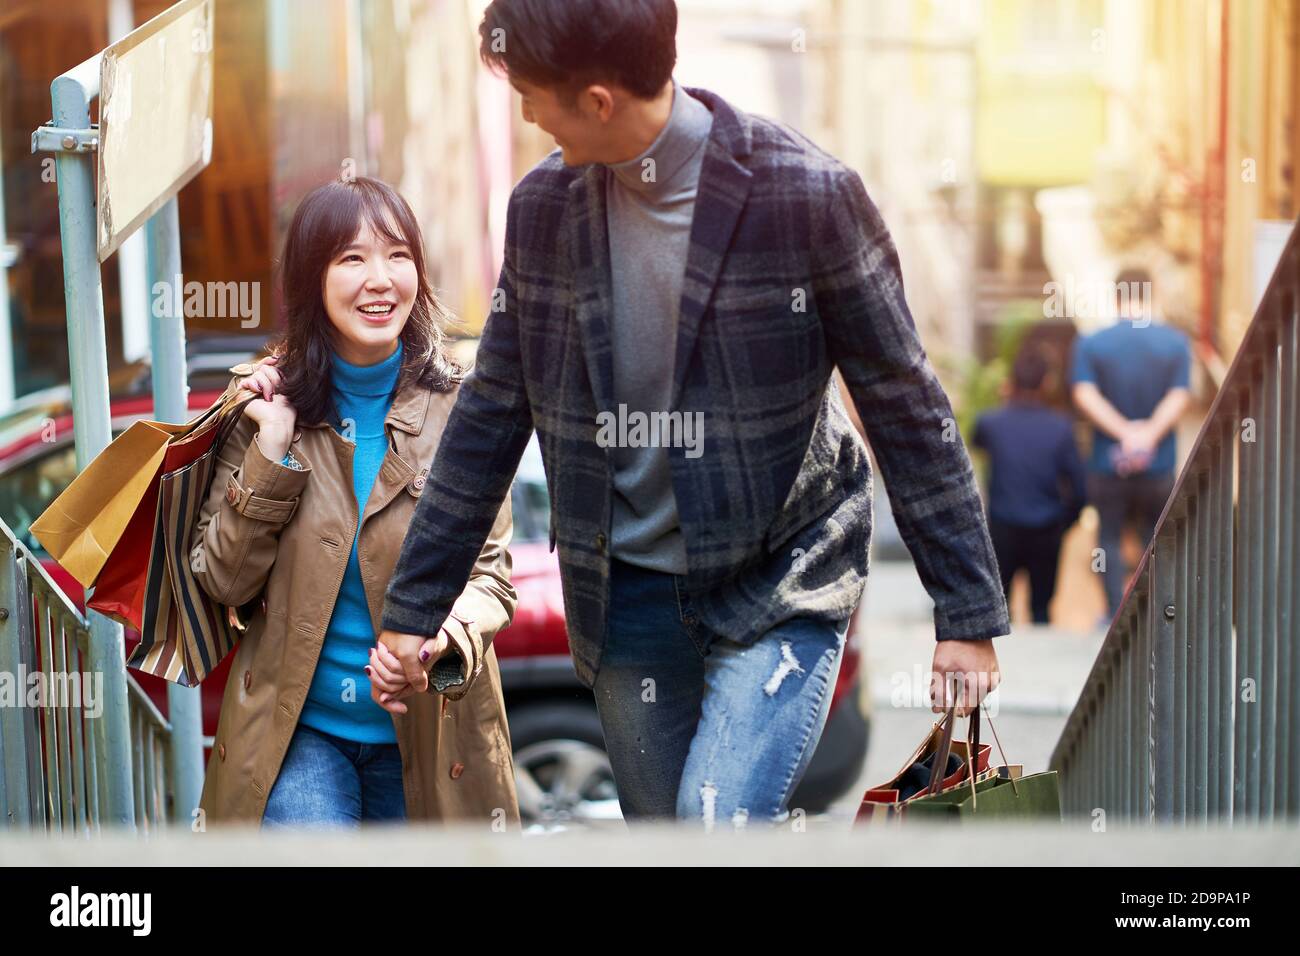 Glücklich junge asiatische Paar zu Fuß sprechen Hände halten beim Einkaufen In der Stadt Stockfoto